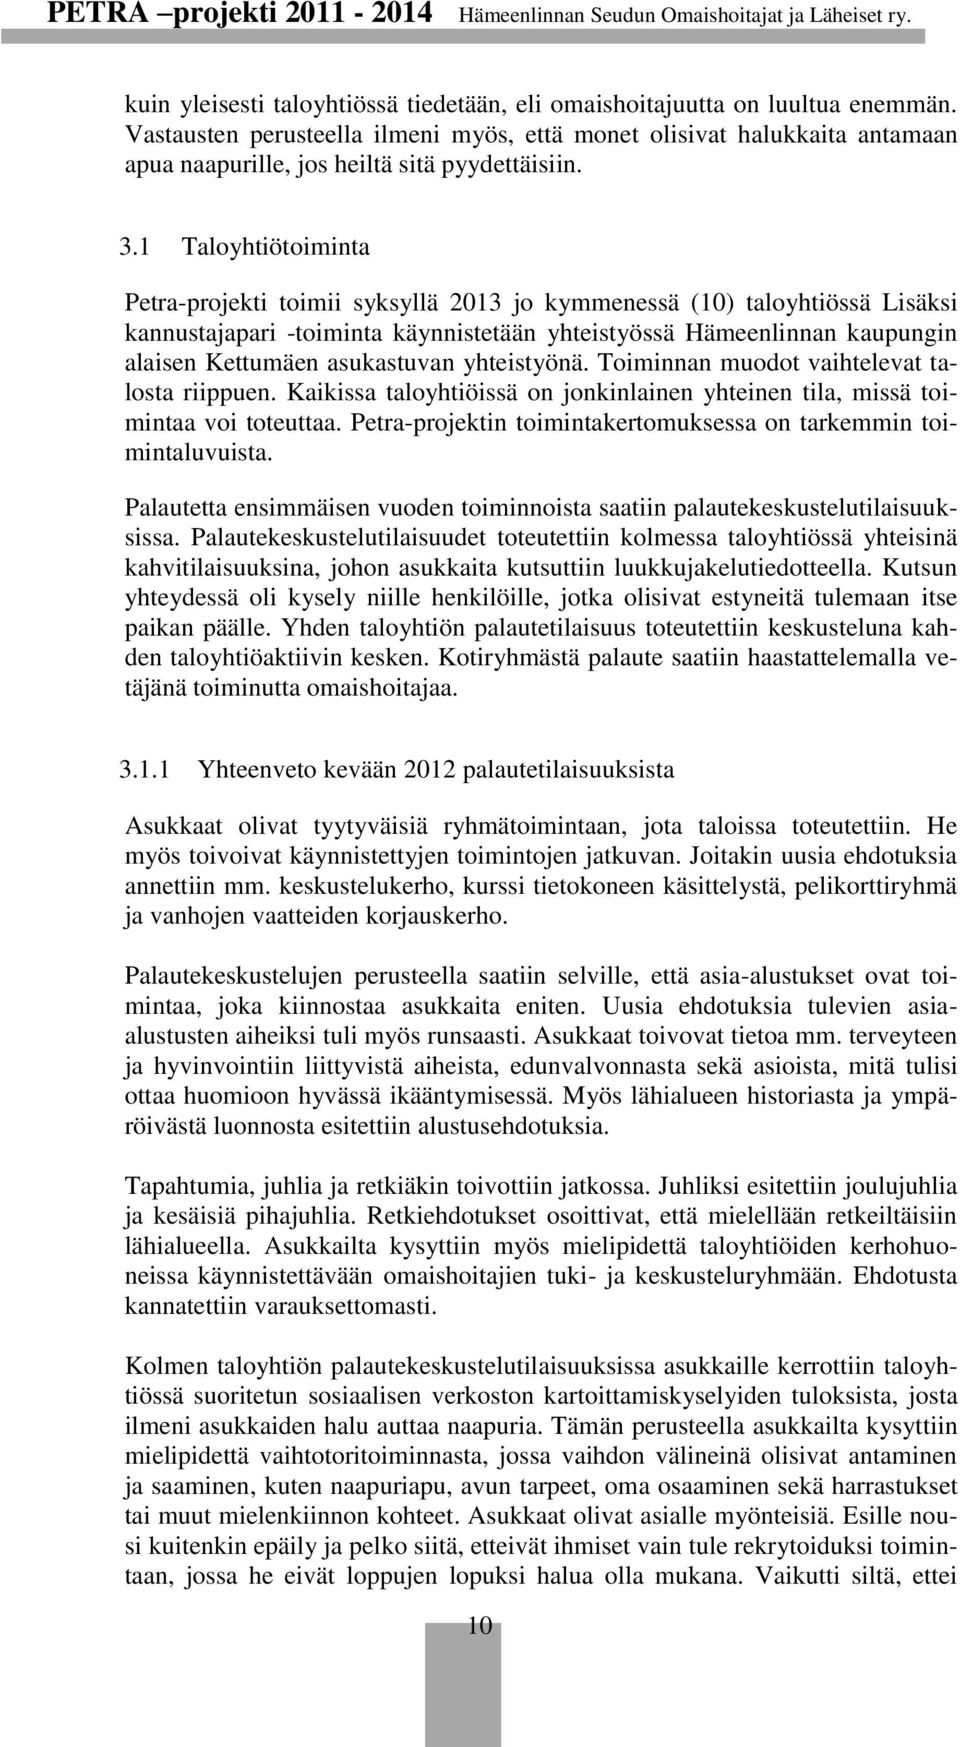 1 Taloyhtiötoiminta Petra-projekti toimii syksyllä 2013 jo kymmenessä (10) taloyhtiössä Lisäksi kannustajapari -toiminta käynnistetään yhteistyössä Hämeenlinnan kaupungin alaisen Kettumäen